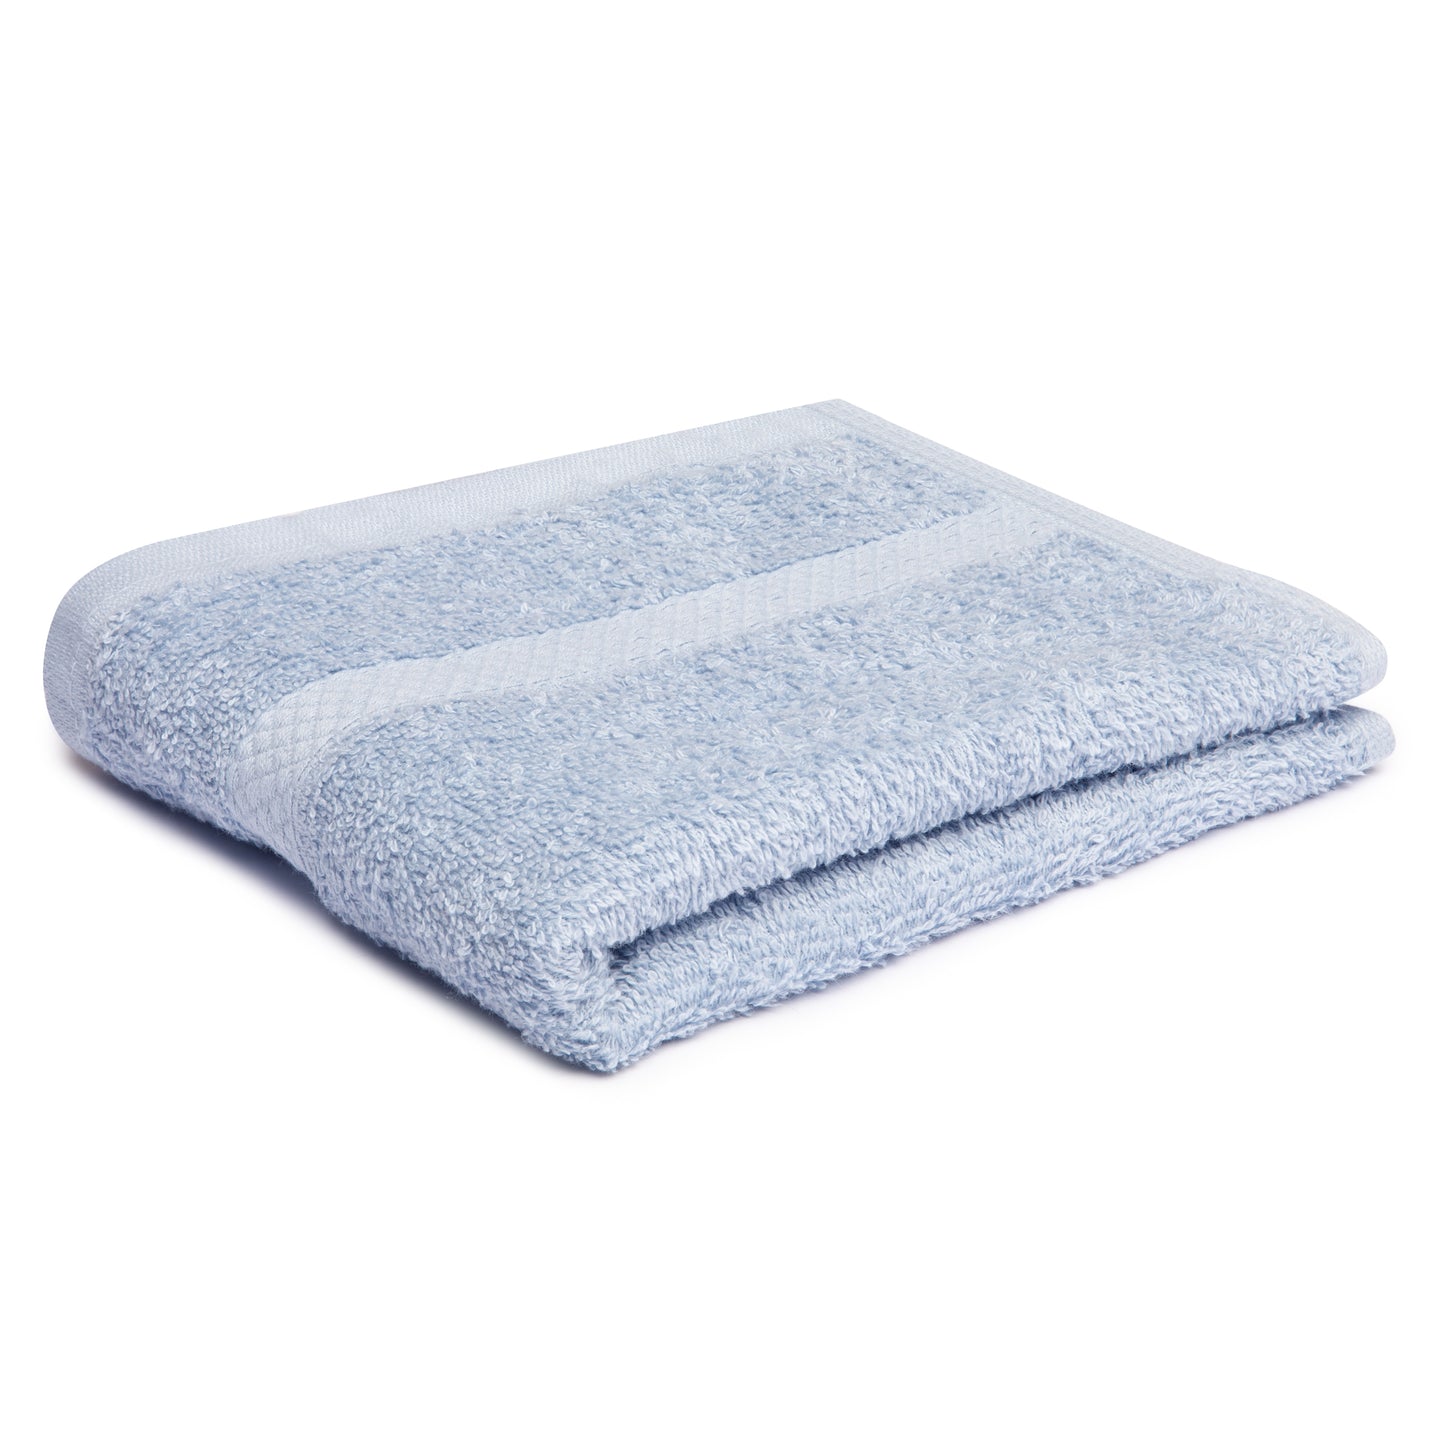 Premium Hand Towel, 16x27 inch, Dobby Border, Hemmed, Vat Dyed, Blue